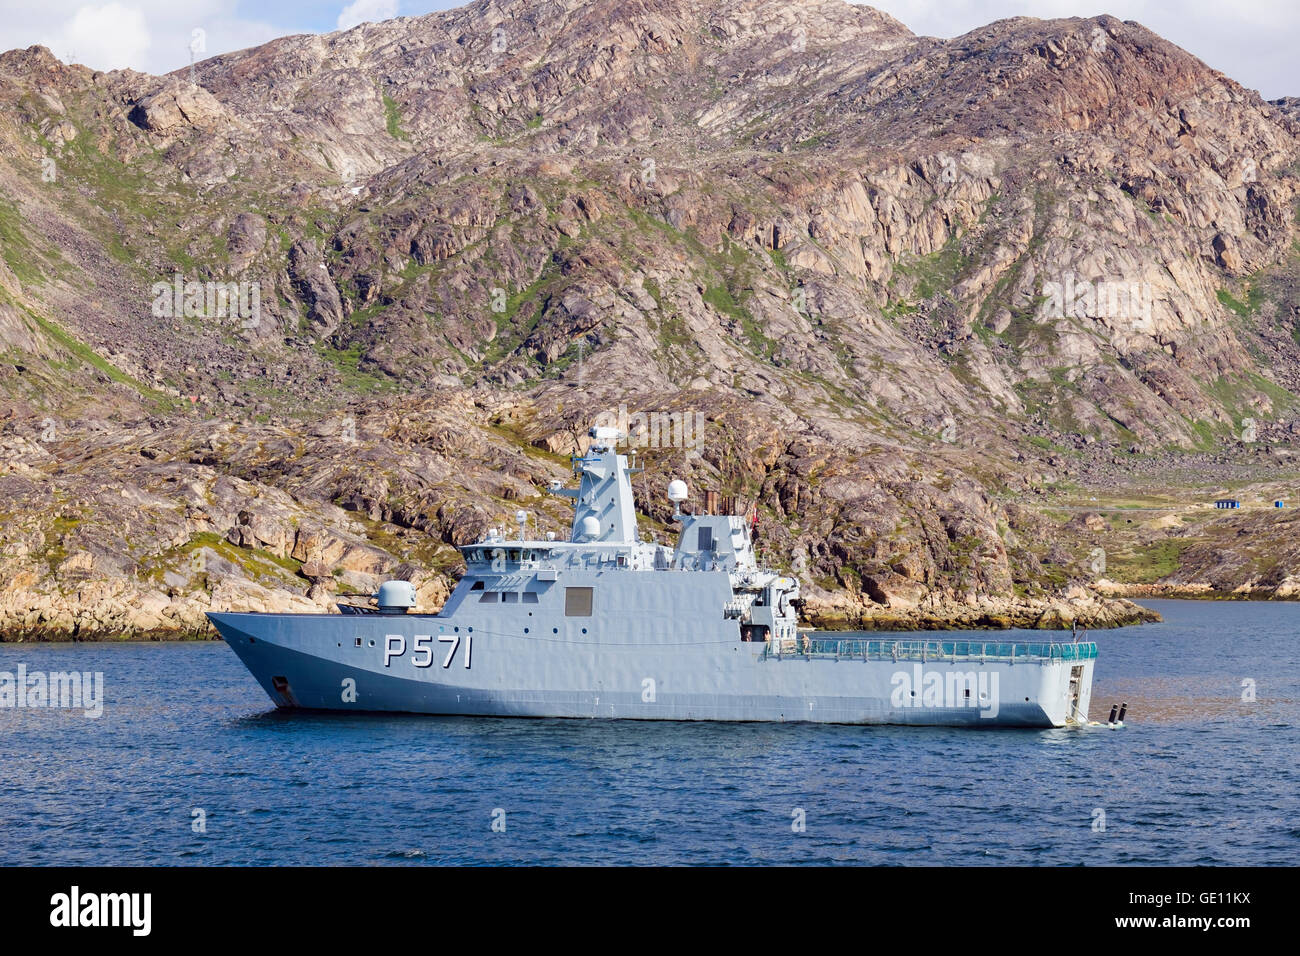 HDMS Ejnar Mikkelsen Royal Danish Navy nave pattuglia di pattugliamento in stretto di Davis sulla costa ovest. Sisimiut, Qeqqata, Groenlandia Foto Stock